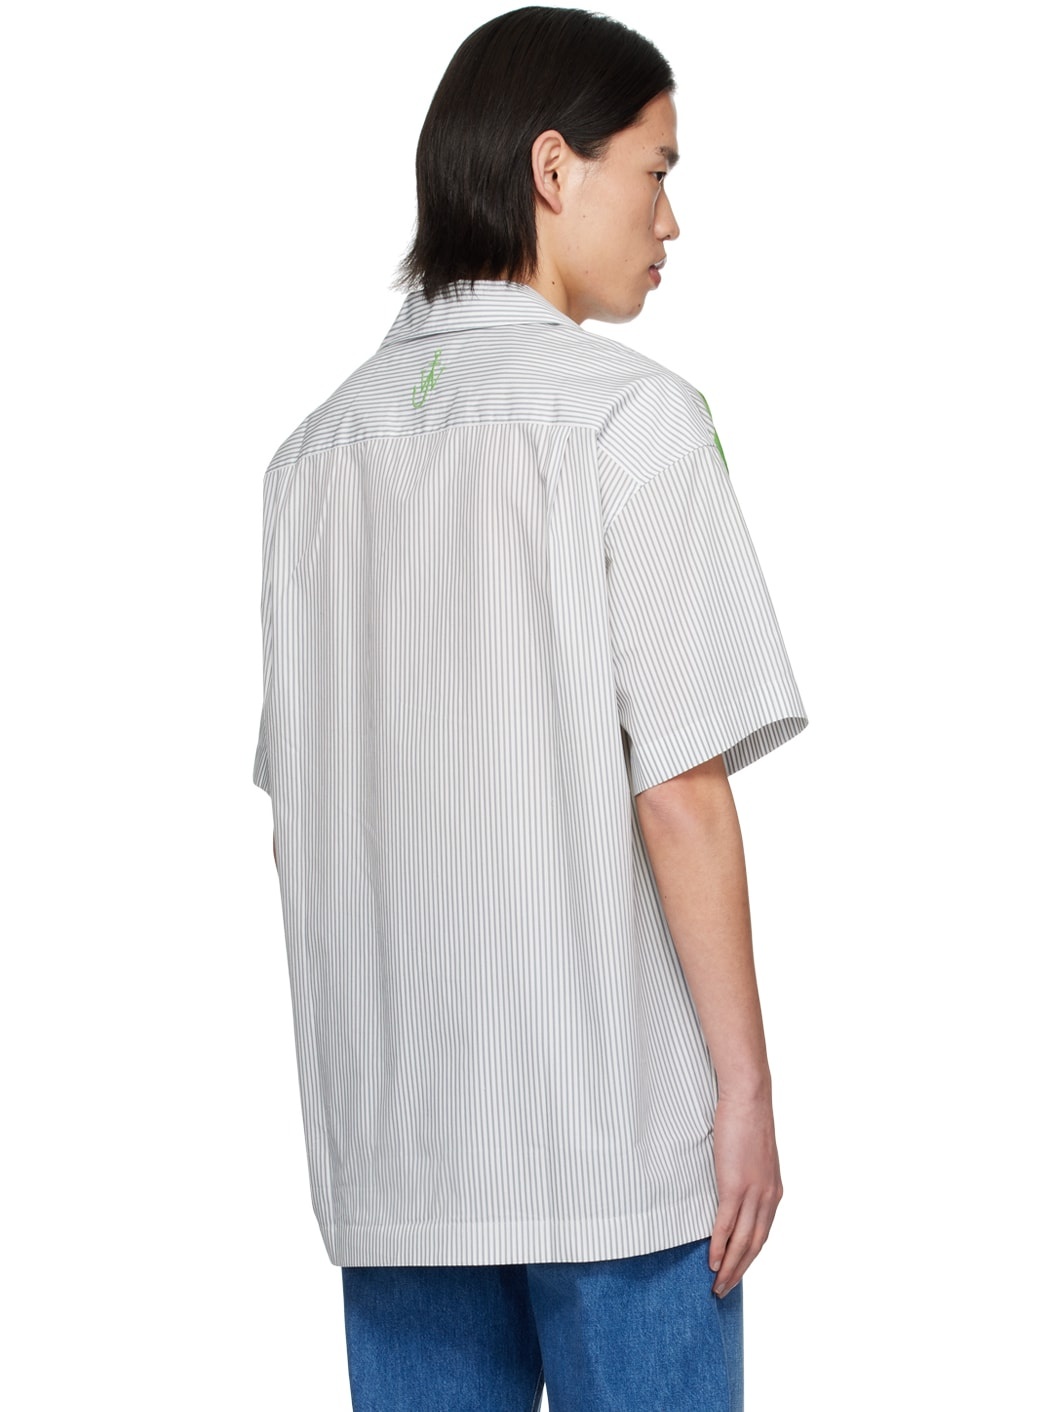 Green & Grey Printed Shirt - 3